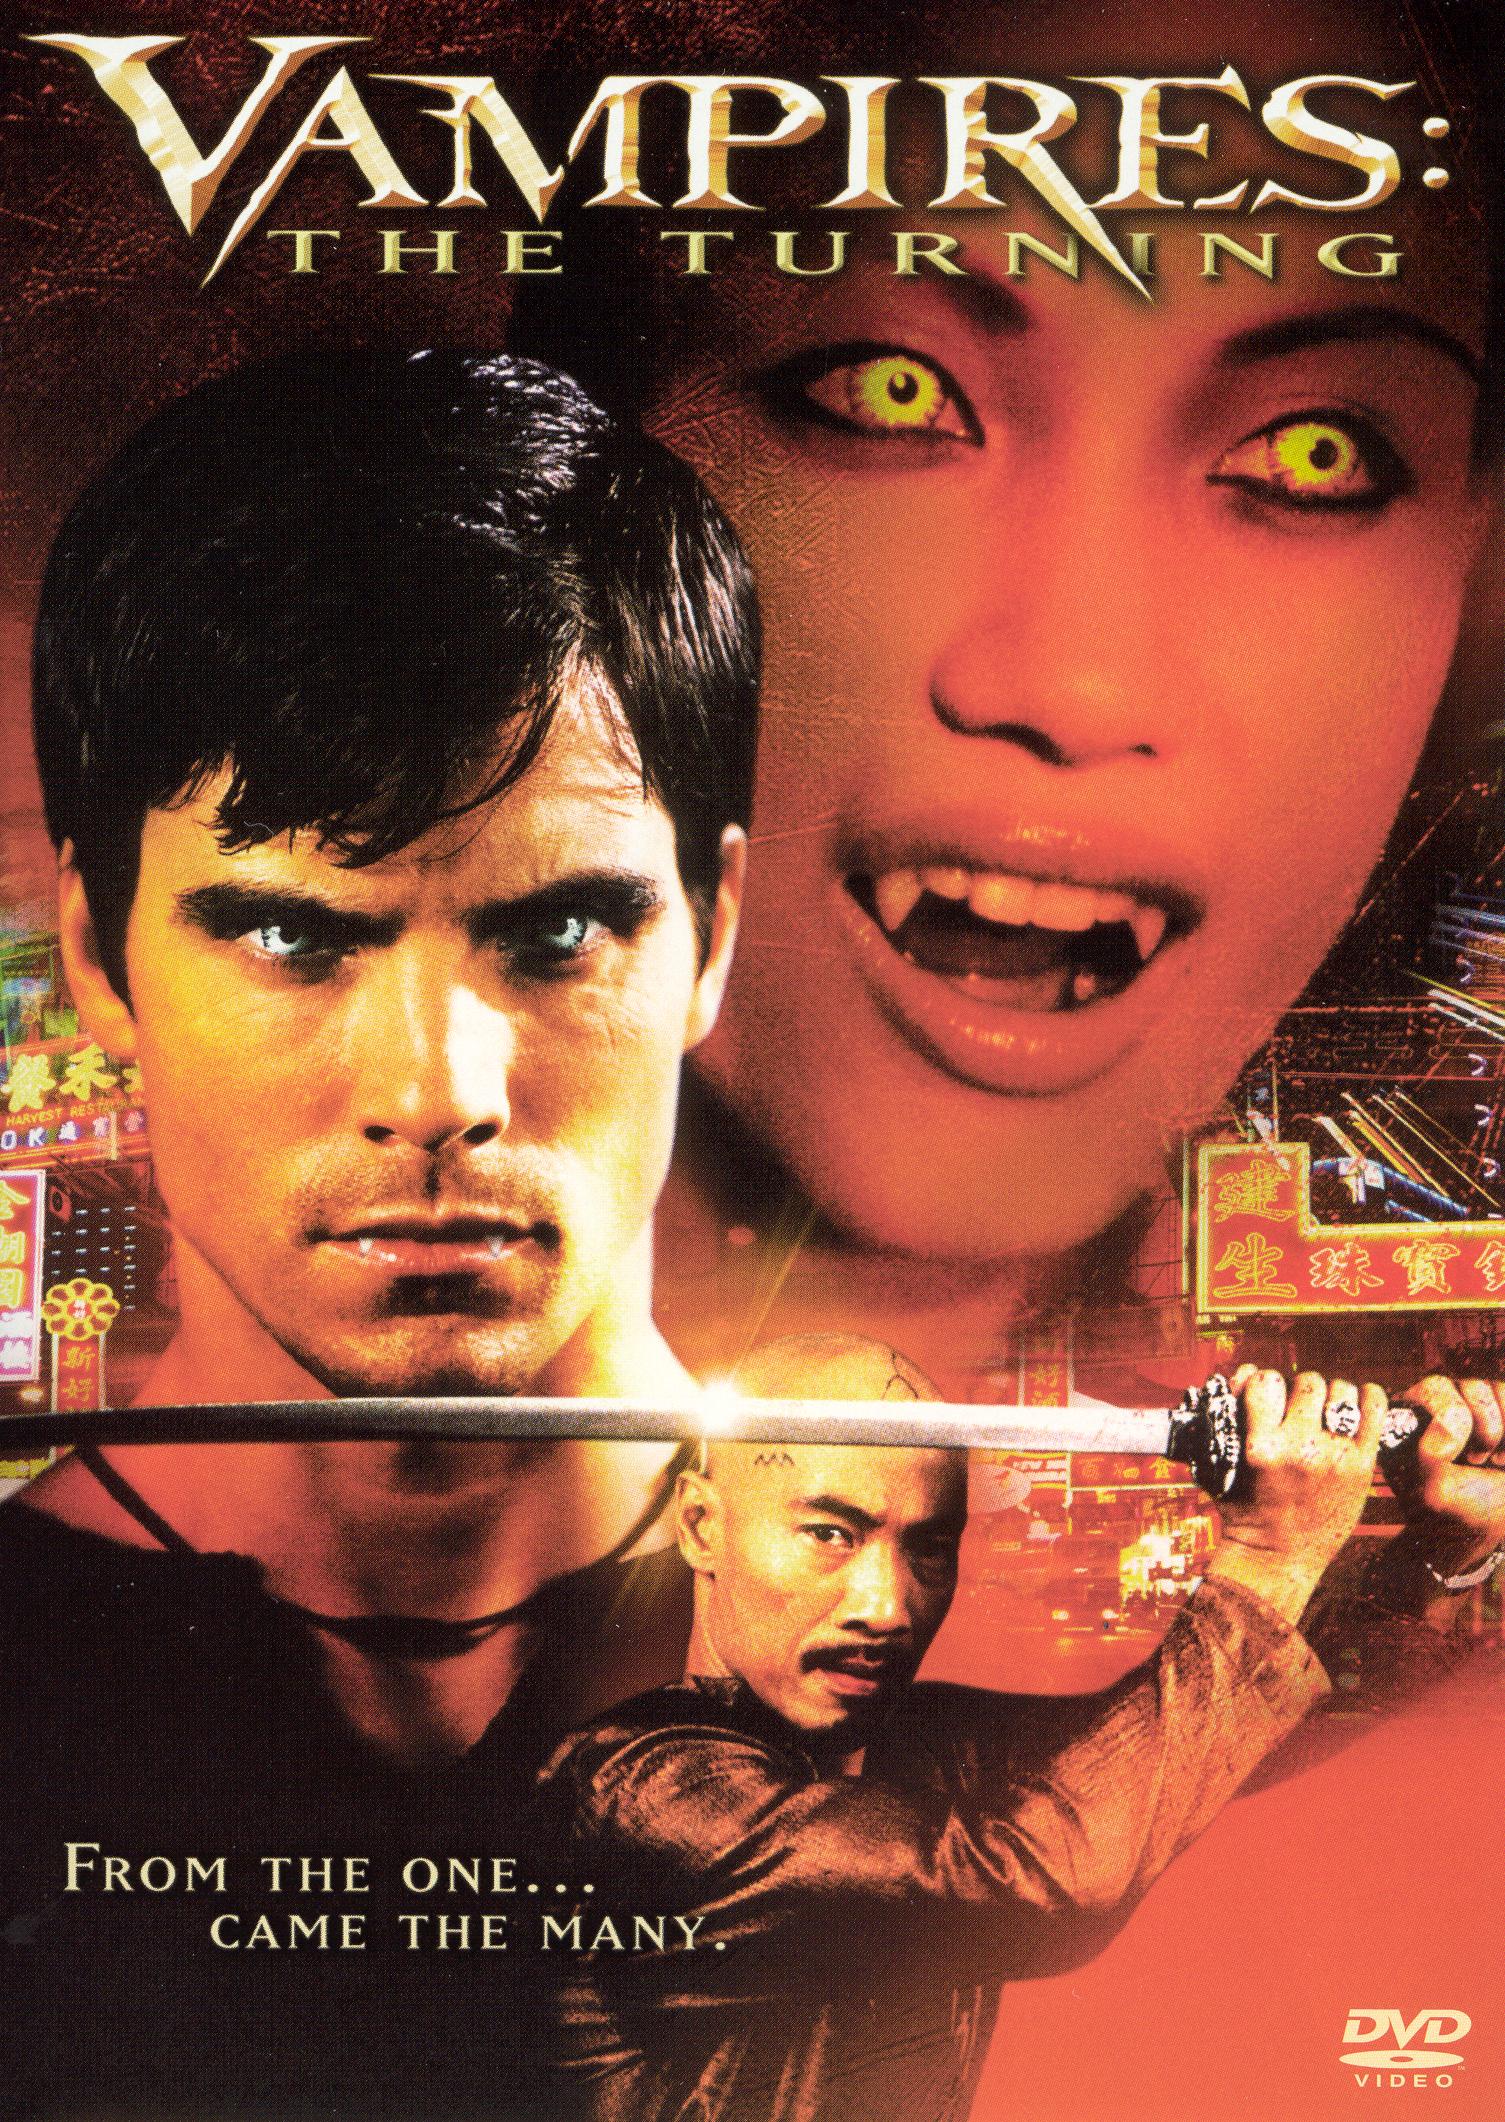 Best Buy: John Carpenter's Vampires [DVD] [1998]